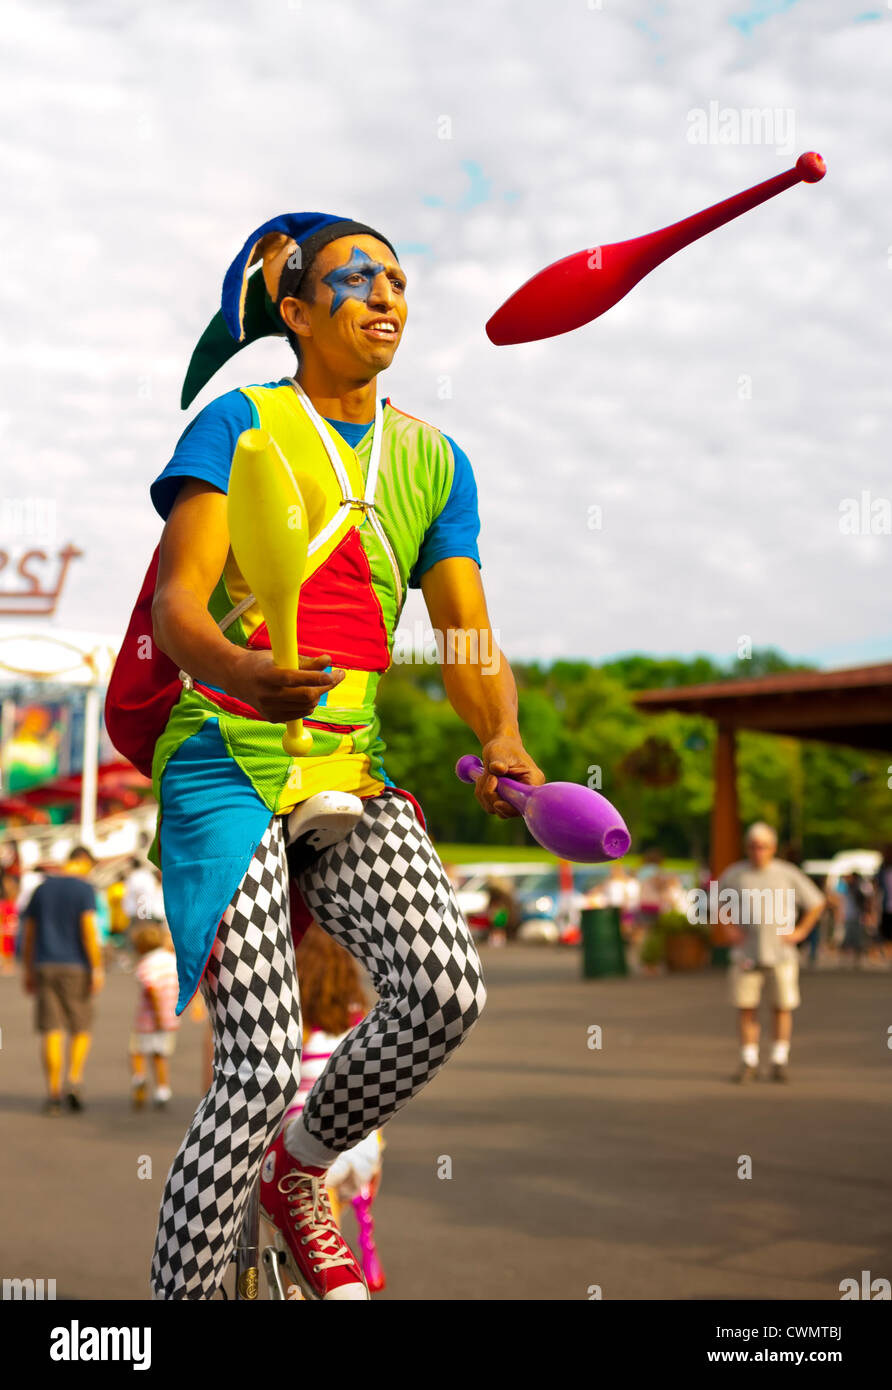 25 août 2012 - Middlebury, Vermont, États-Unis - jongleur en costume  d'Arlequin sur les broches de jonglerie monocycle à Quassy Amusement Park  Photo Stock - Alamy